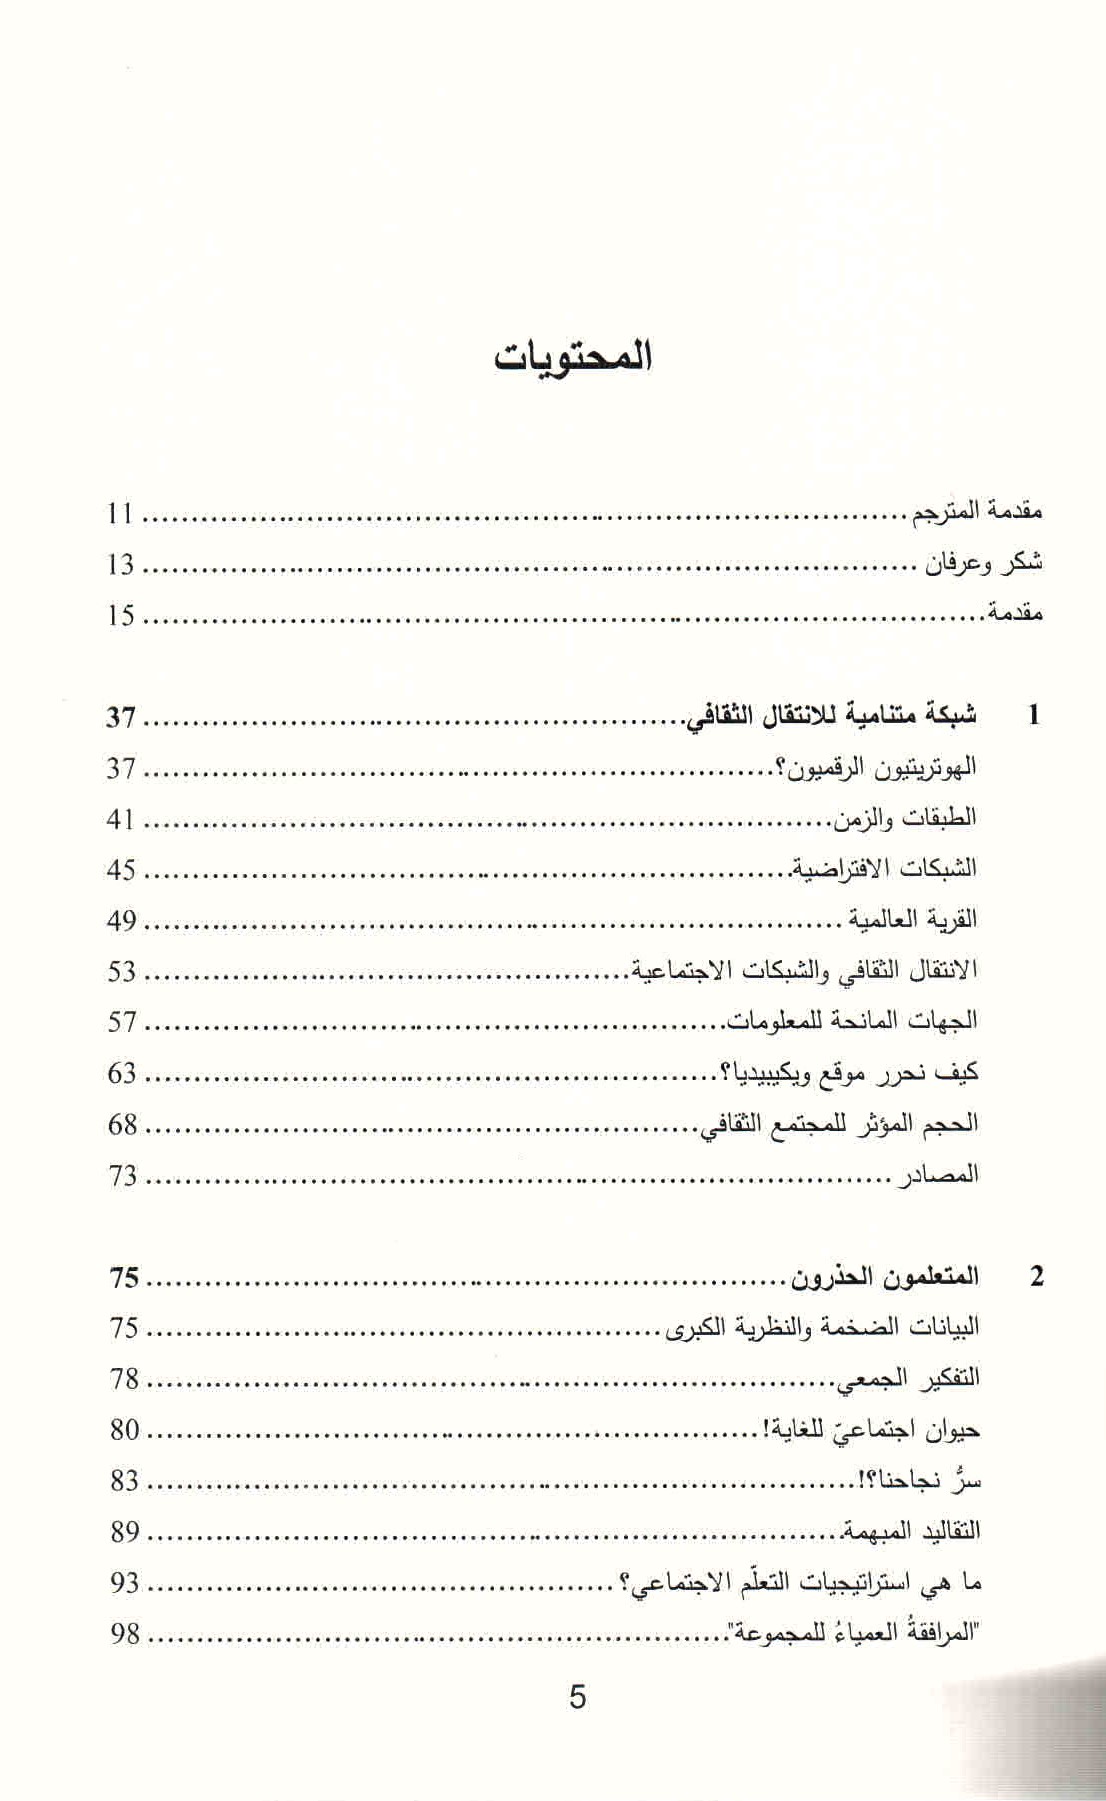 قائمة محتويات كتاب التطور الثفافي في العصر الرقمي ص. 5